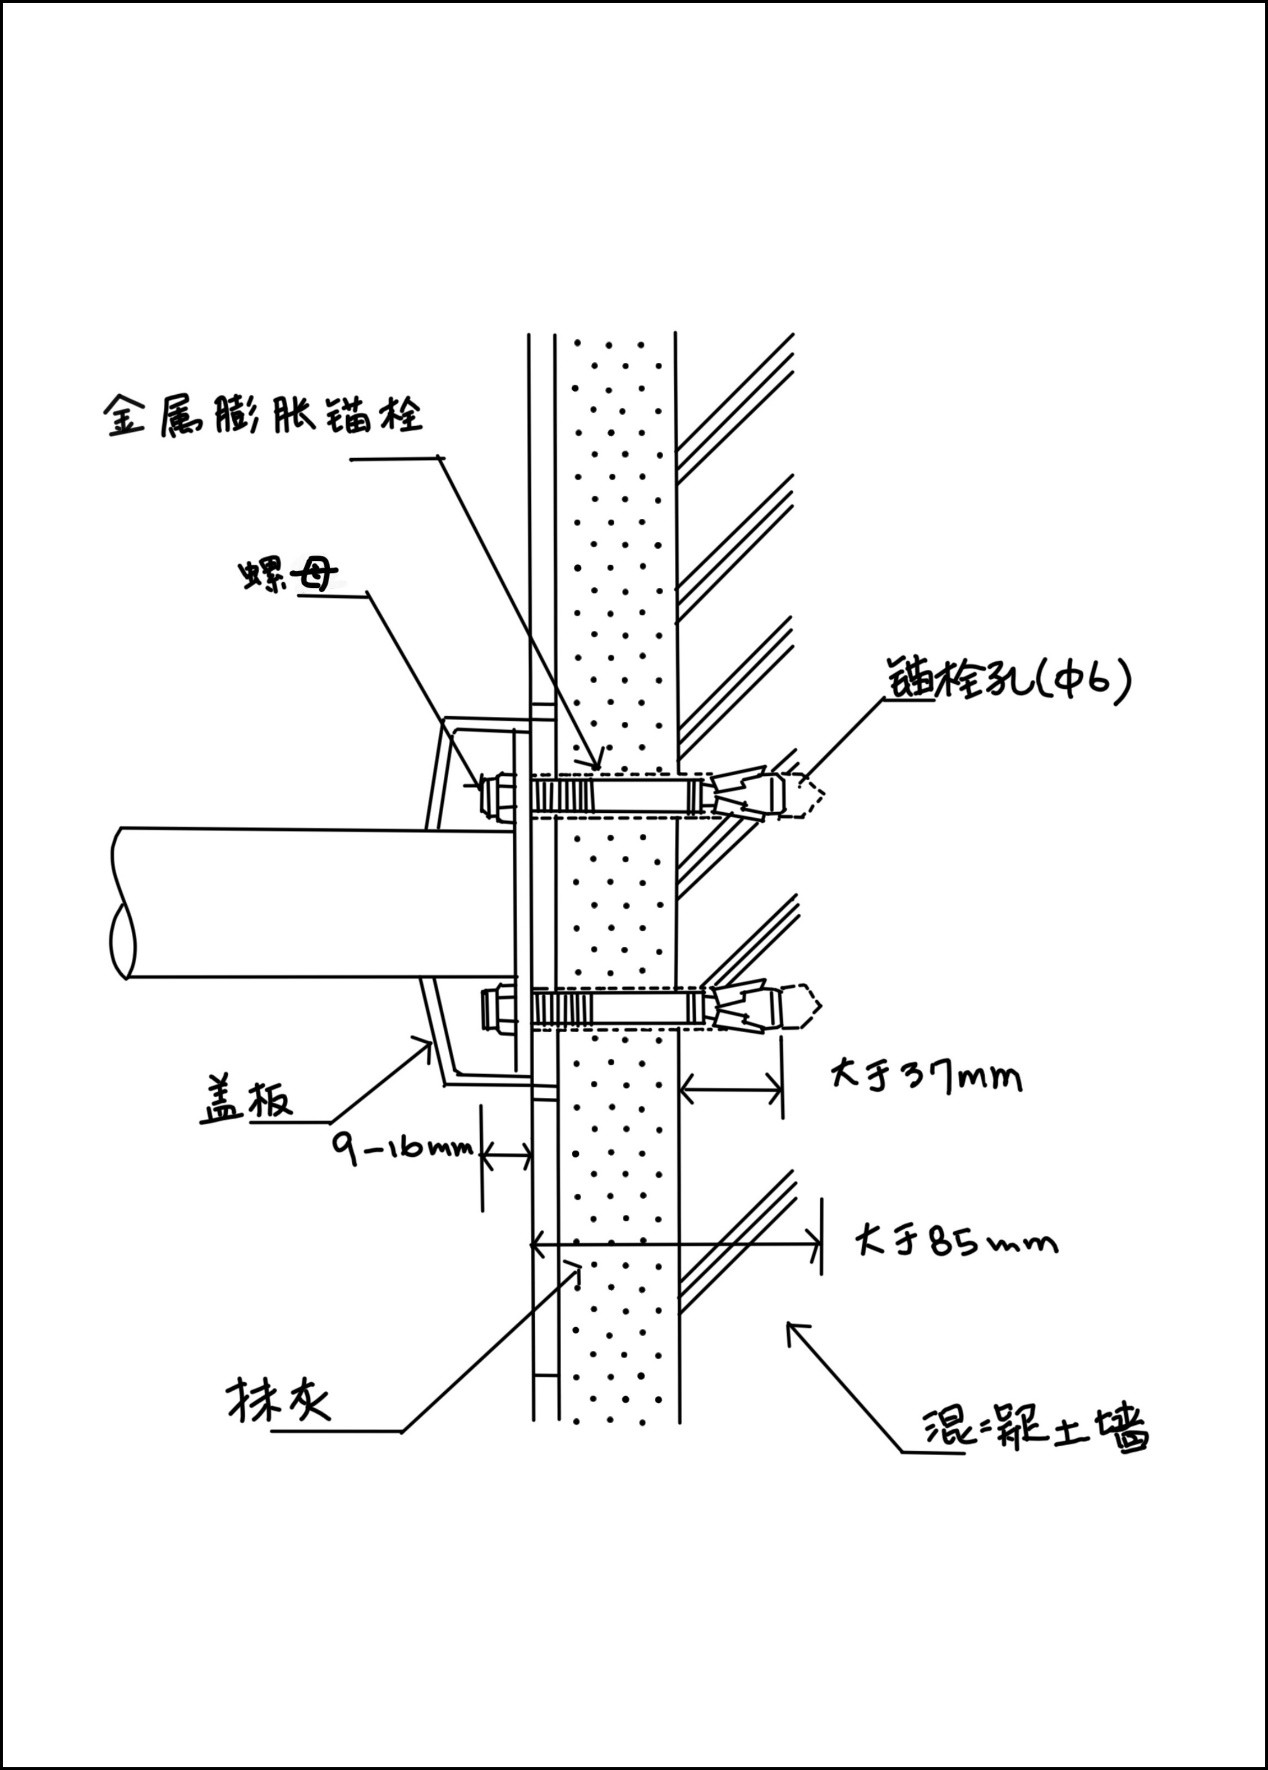 图 在混凝土墙体结构上安装折翻扶手的施工方法.jpg